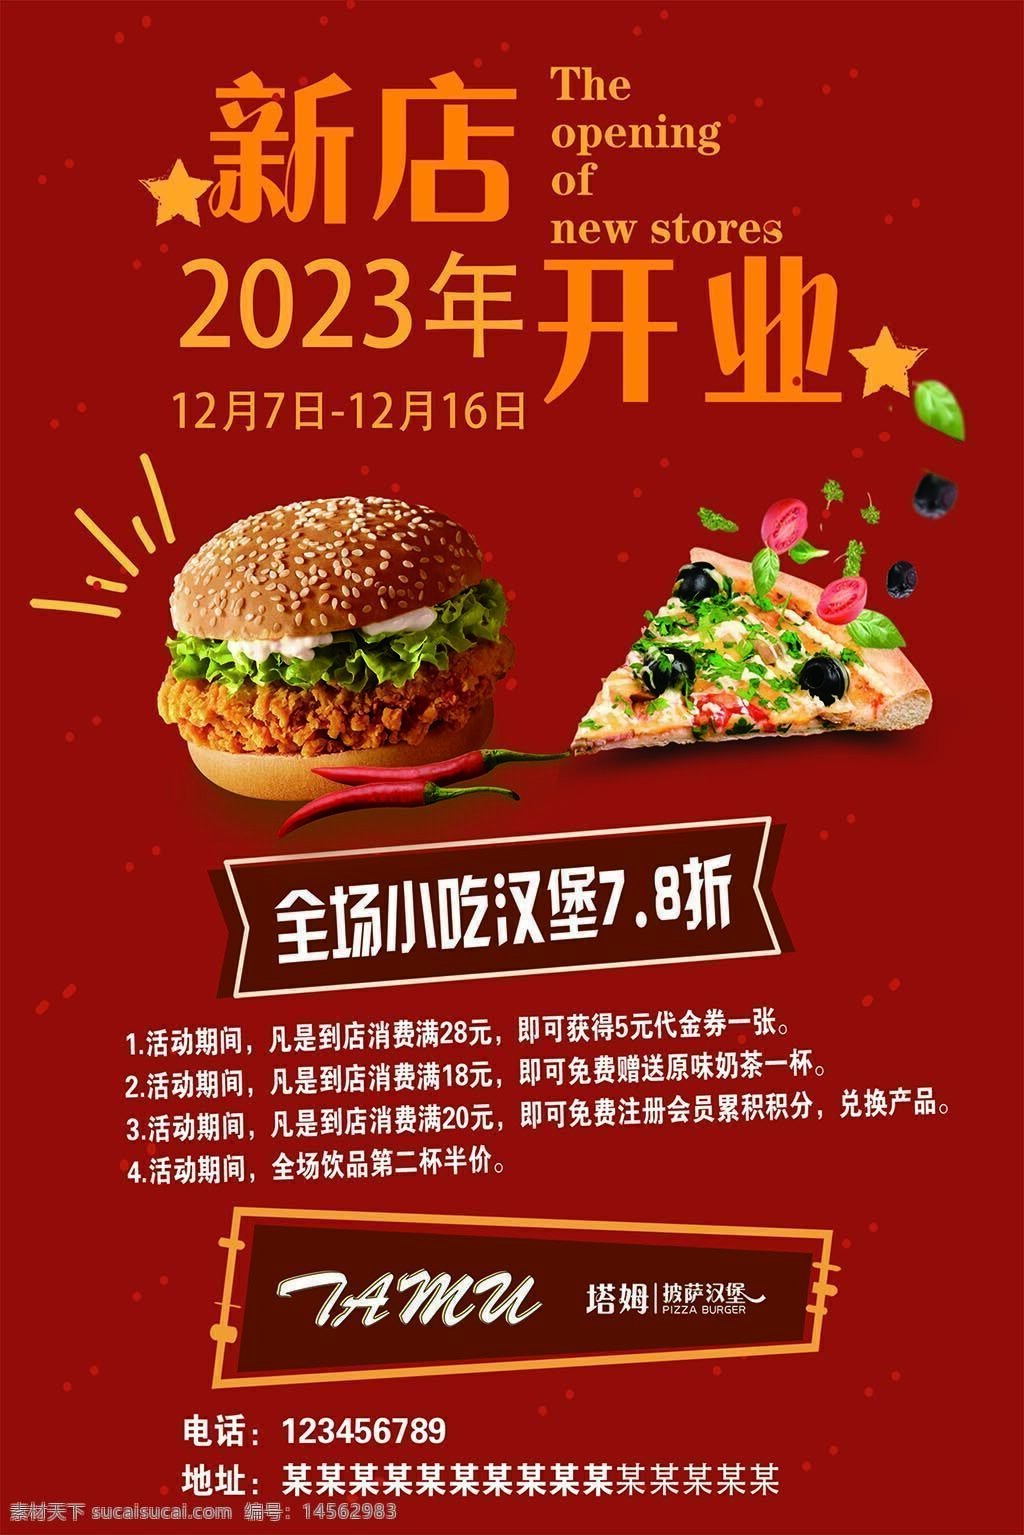 开业海报 促销活动 七折 汉堡 红色